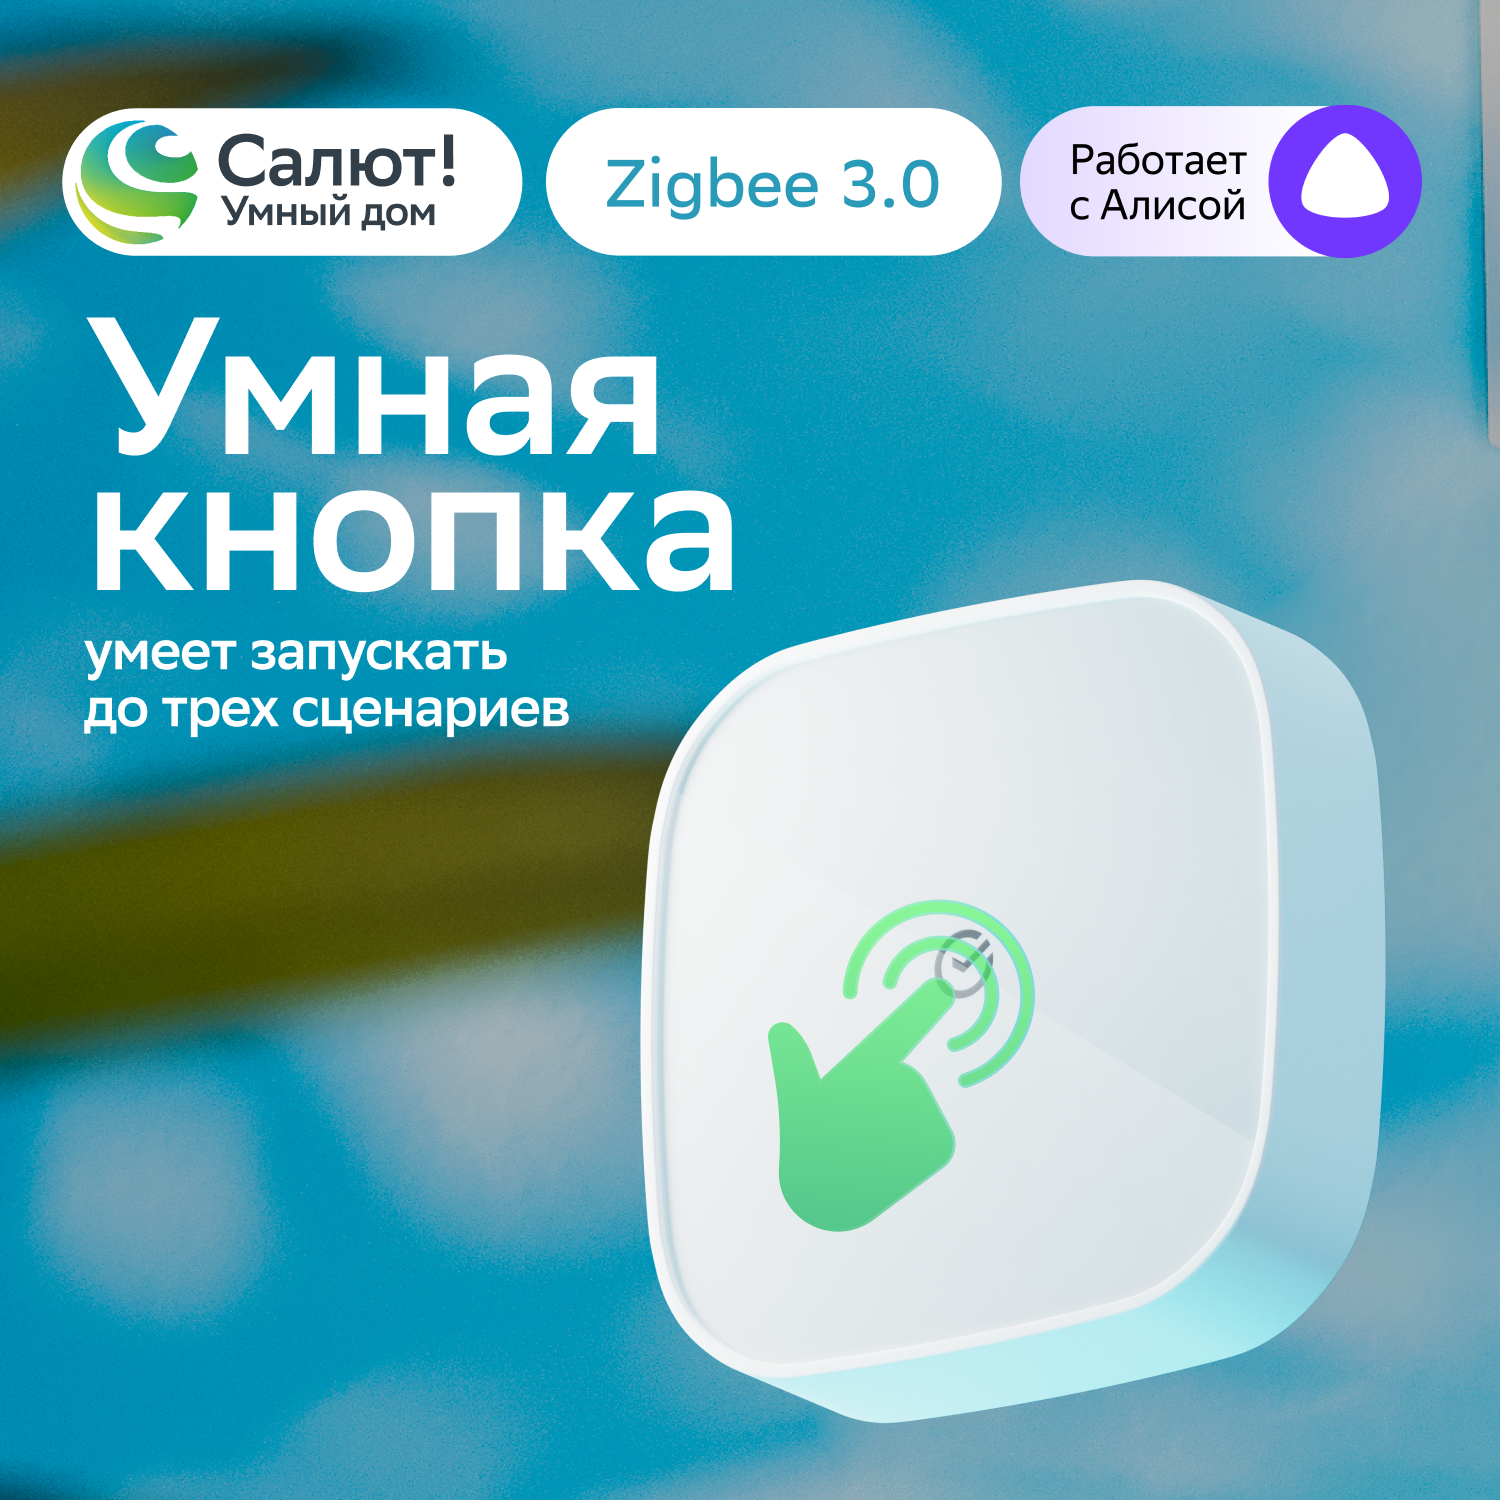 Умная кнопка Sber SBDV-00032, Zigbee 3.0, Совместим с Салют и Яндекс Алисой, Белый